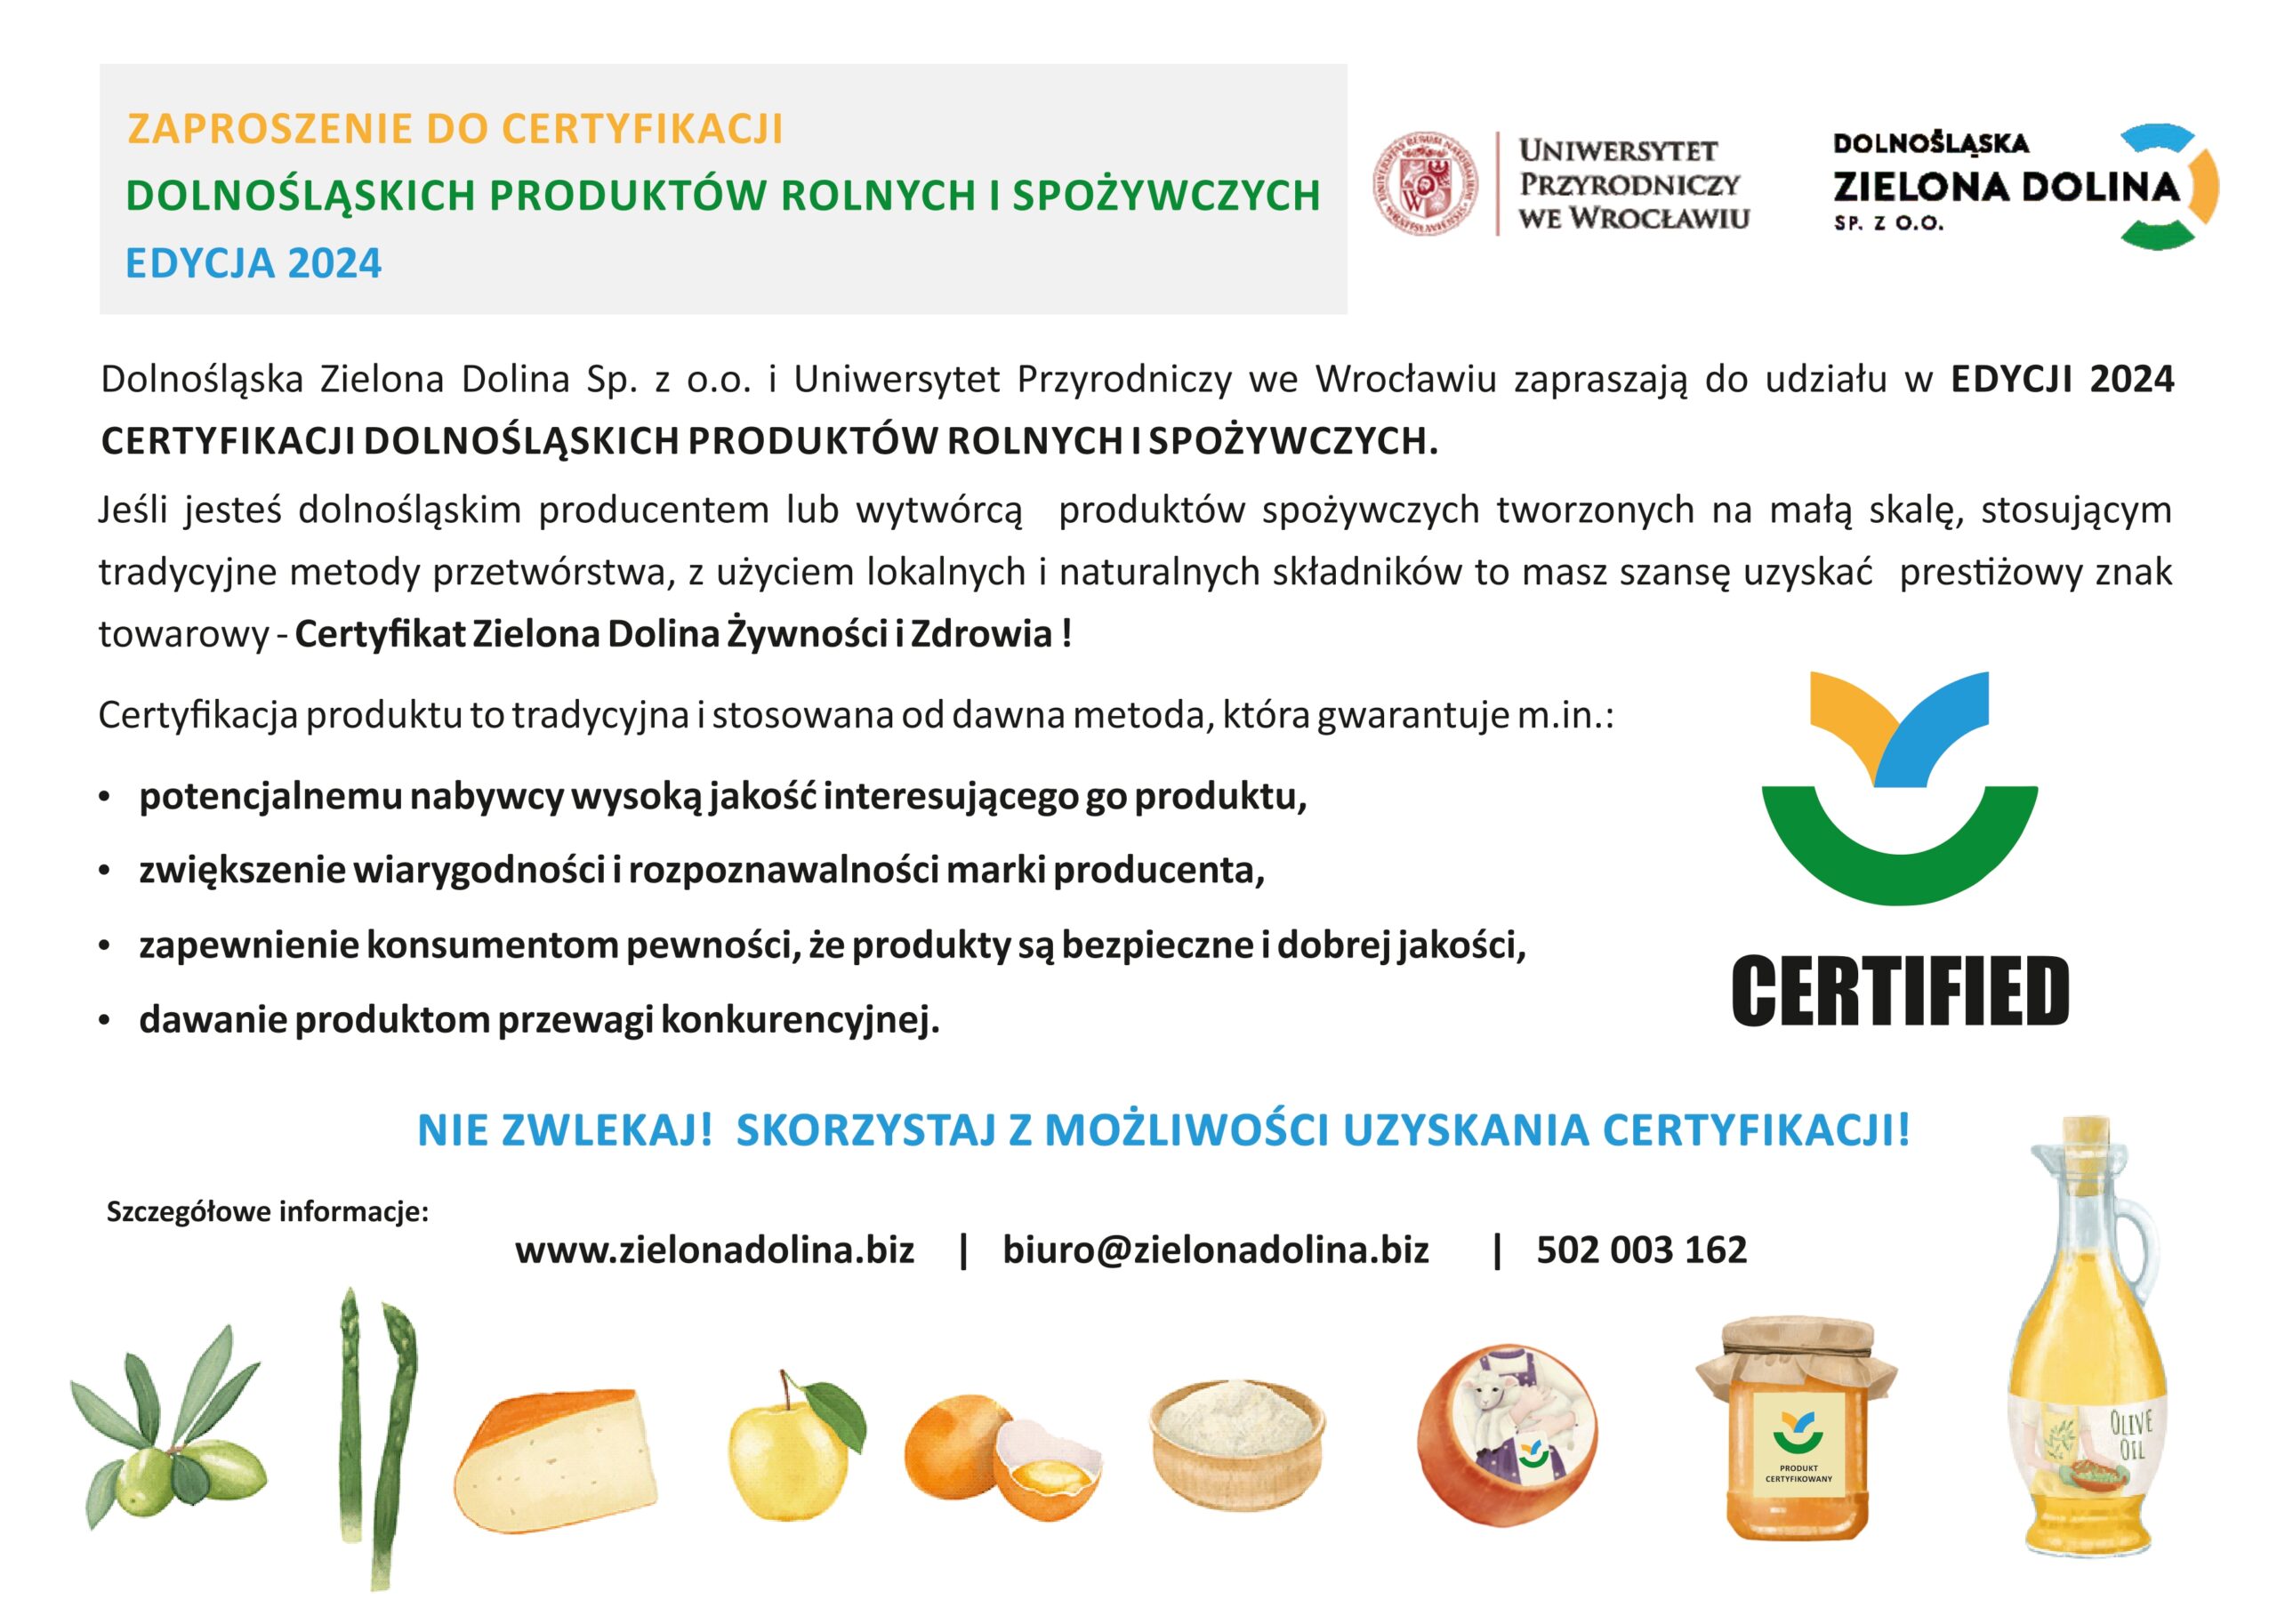 Zaproszenie do udziału w edycji 2024 Certyfikacji dolnośląskich produktów rolnych i spożywczych